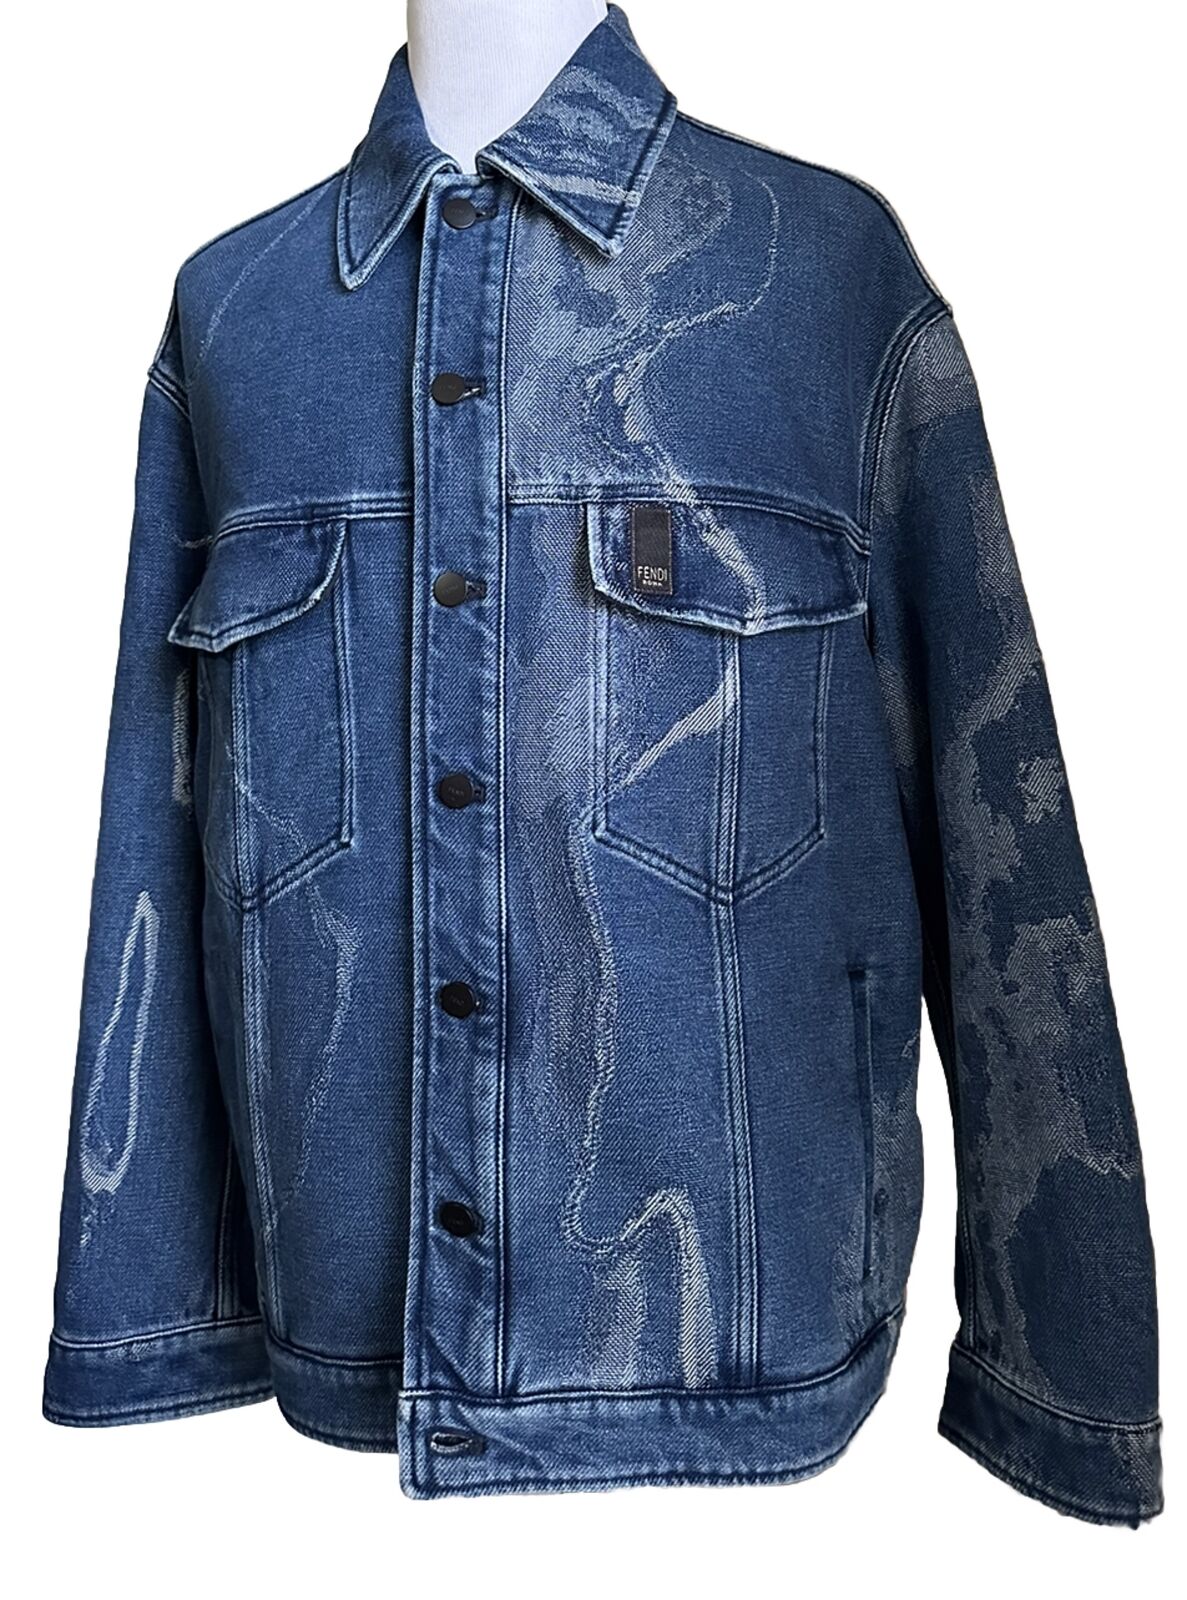 Мужская джинсовая куртка оверсайз Moonlight Fendi 42 US/52 Ita FW1131, NWT 1950 долларов США